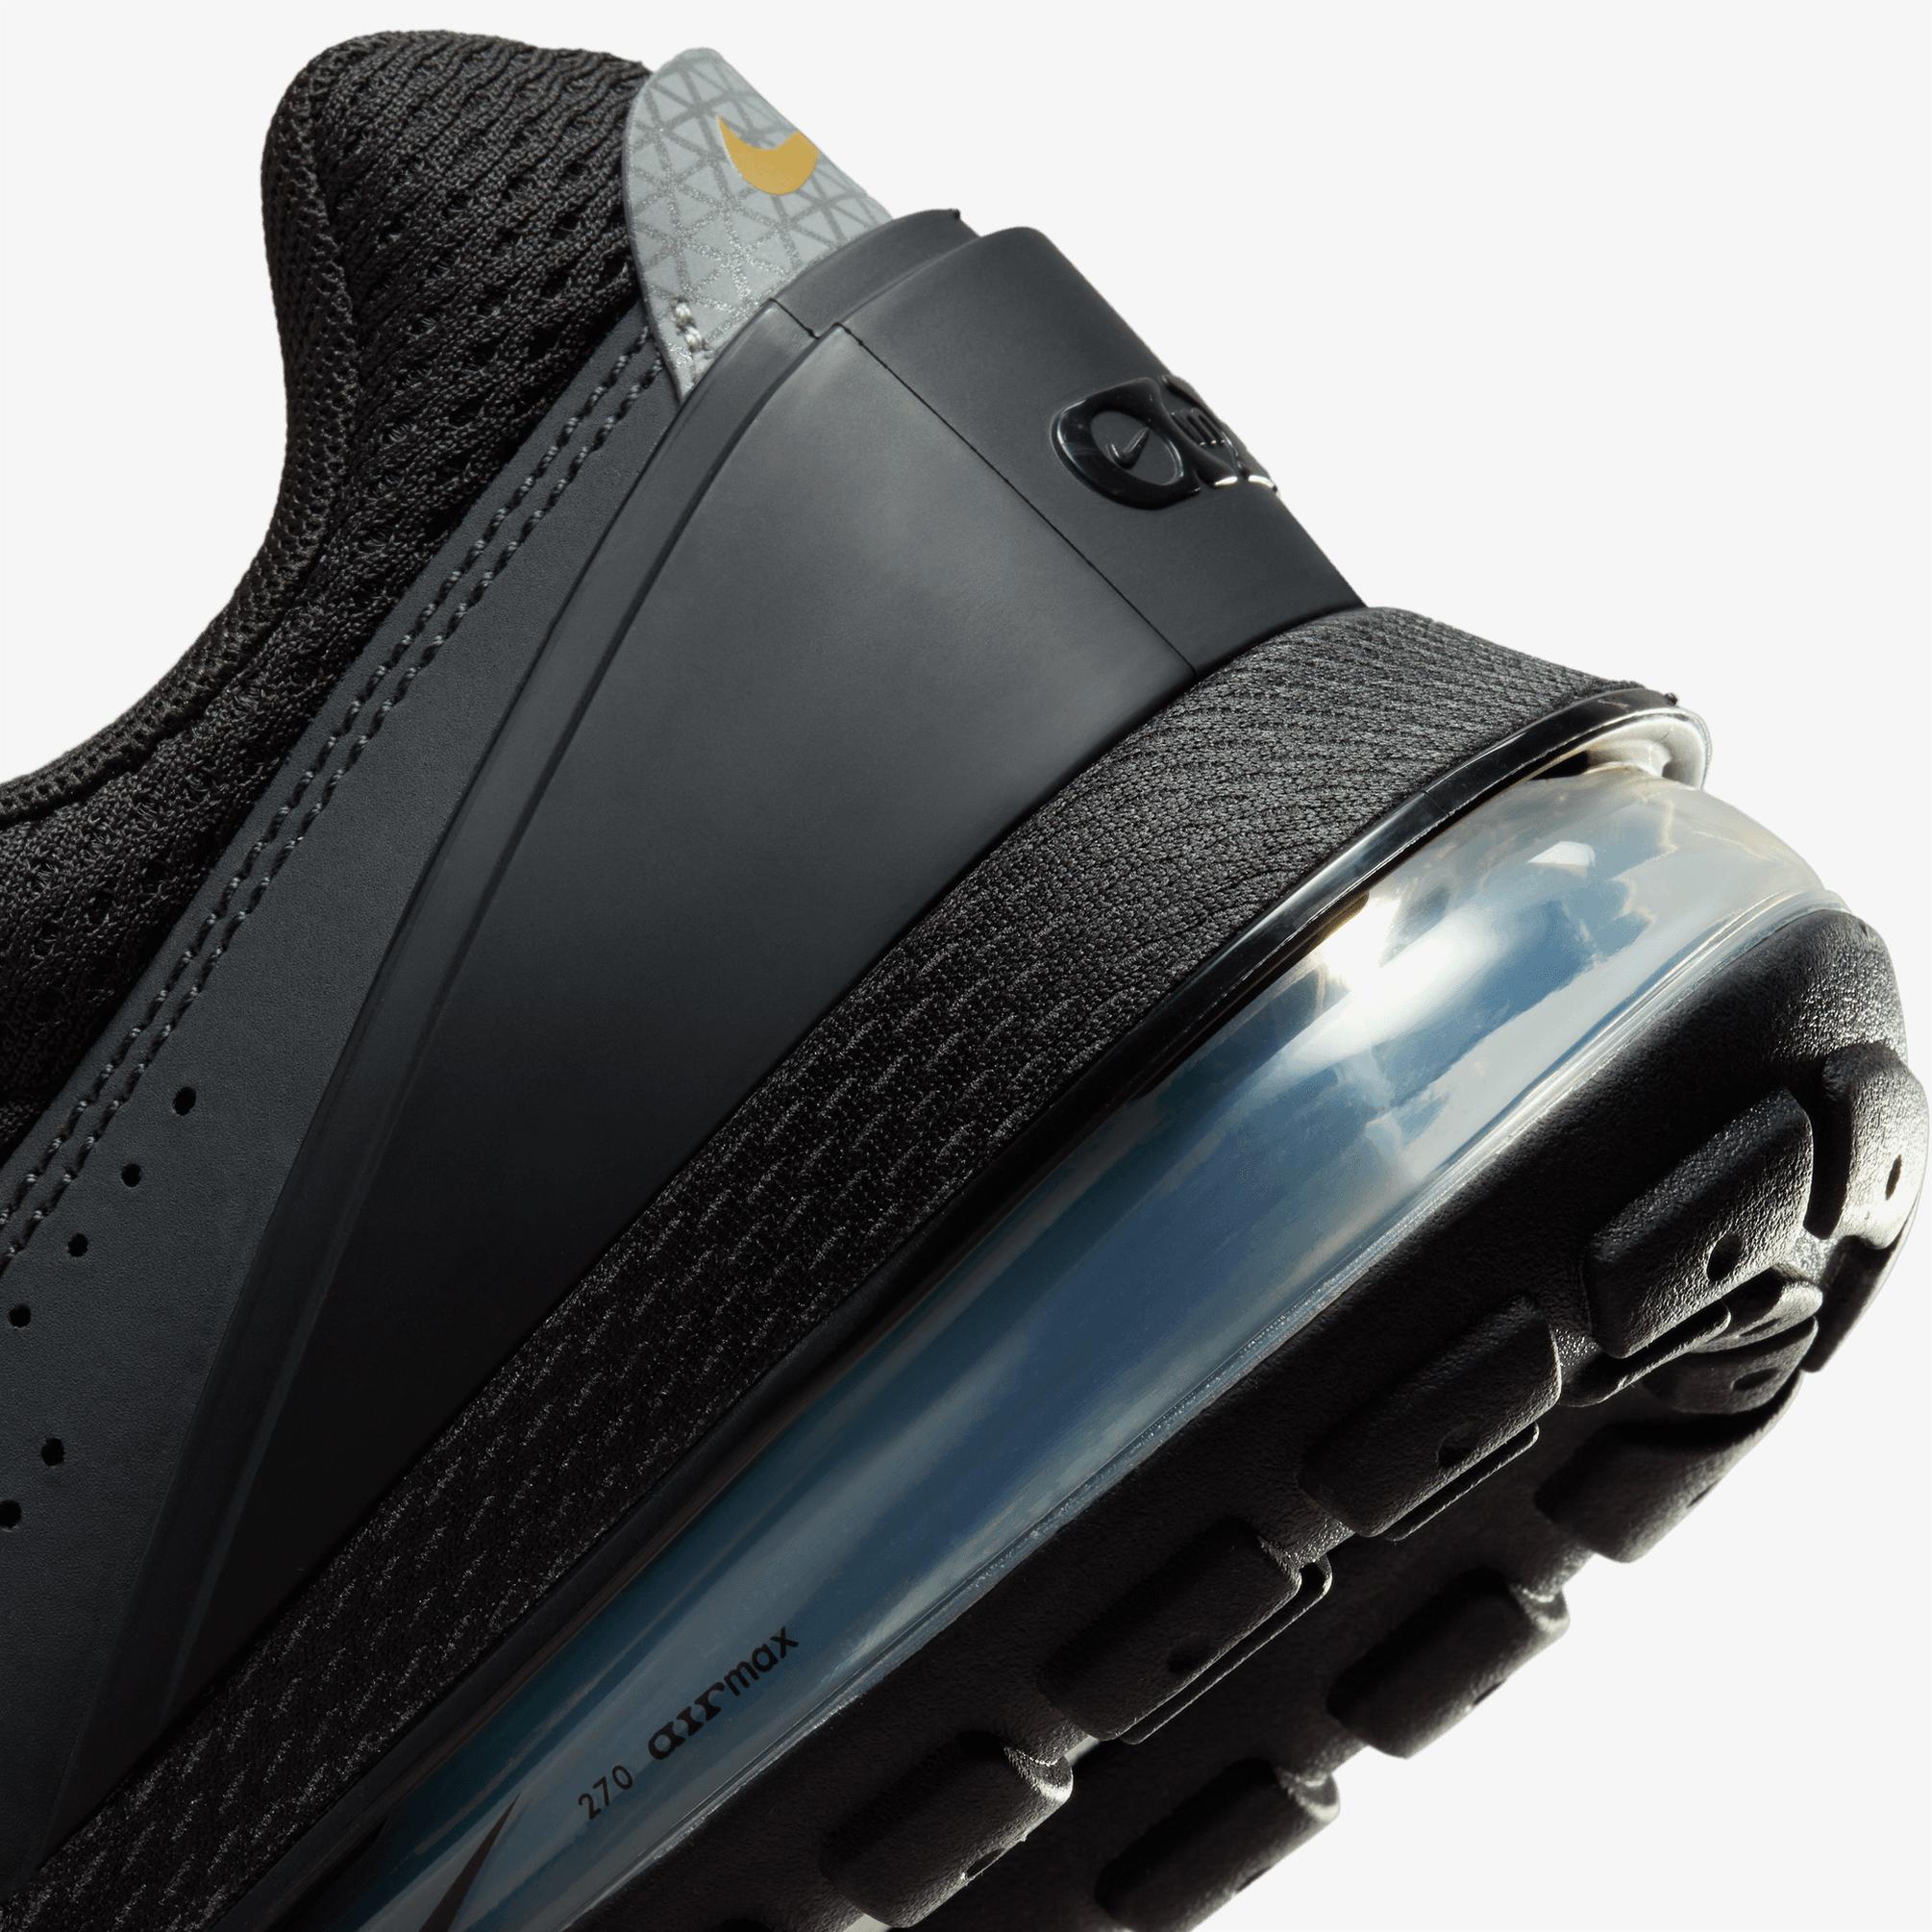  Nike Air Max Pulse Erkek Siyah Sneaker